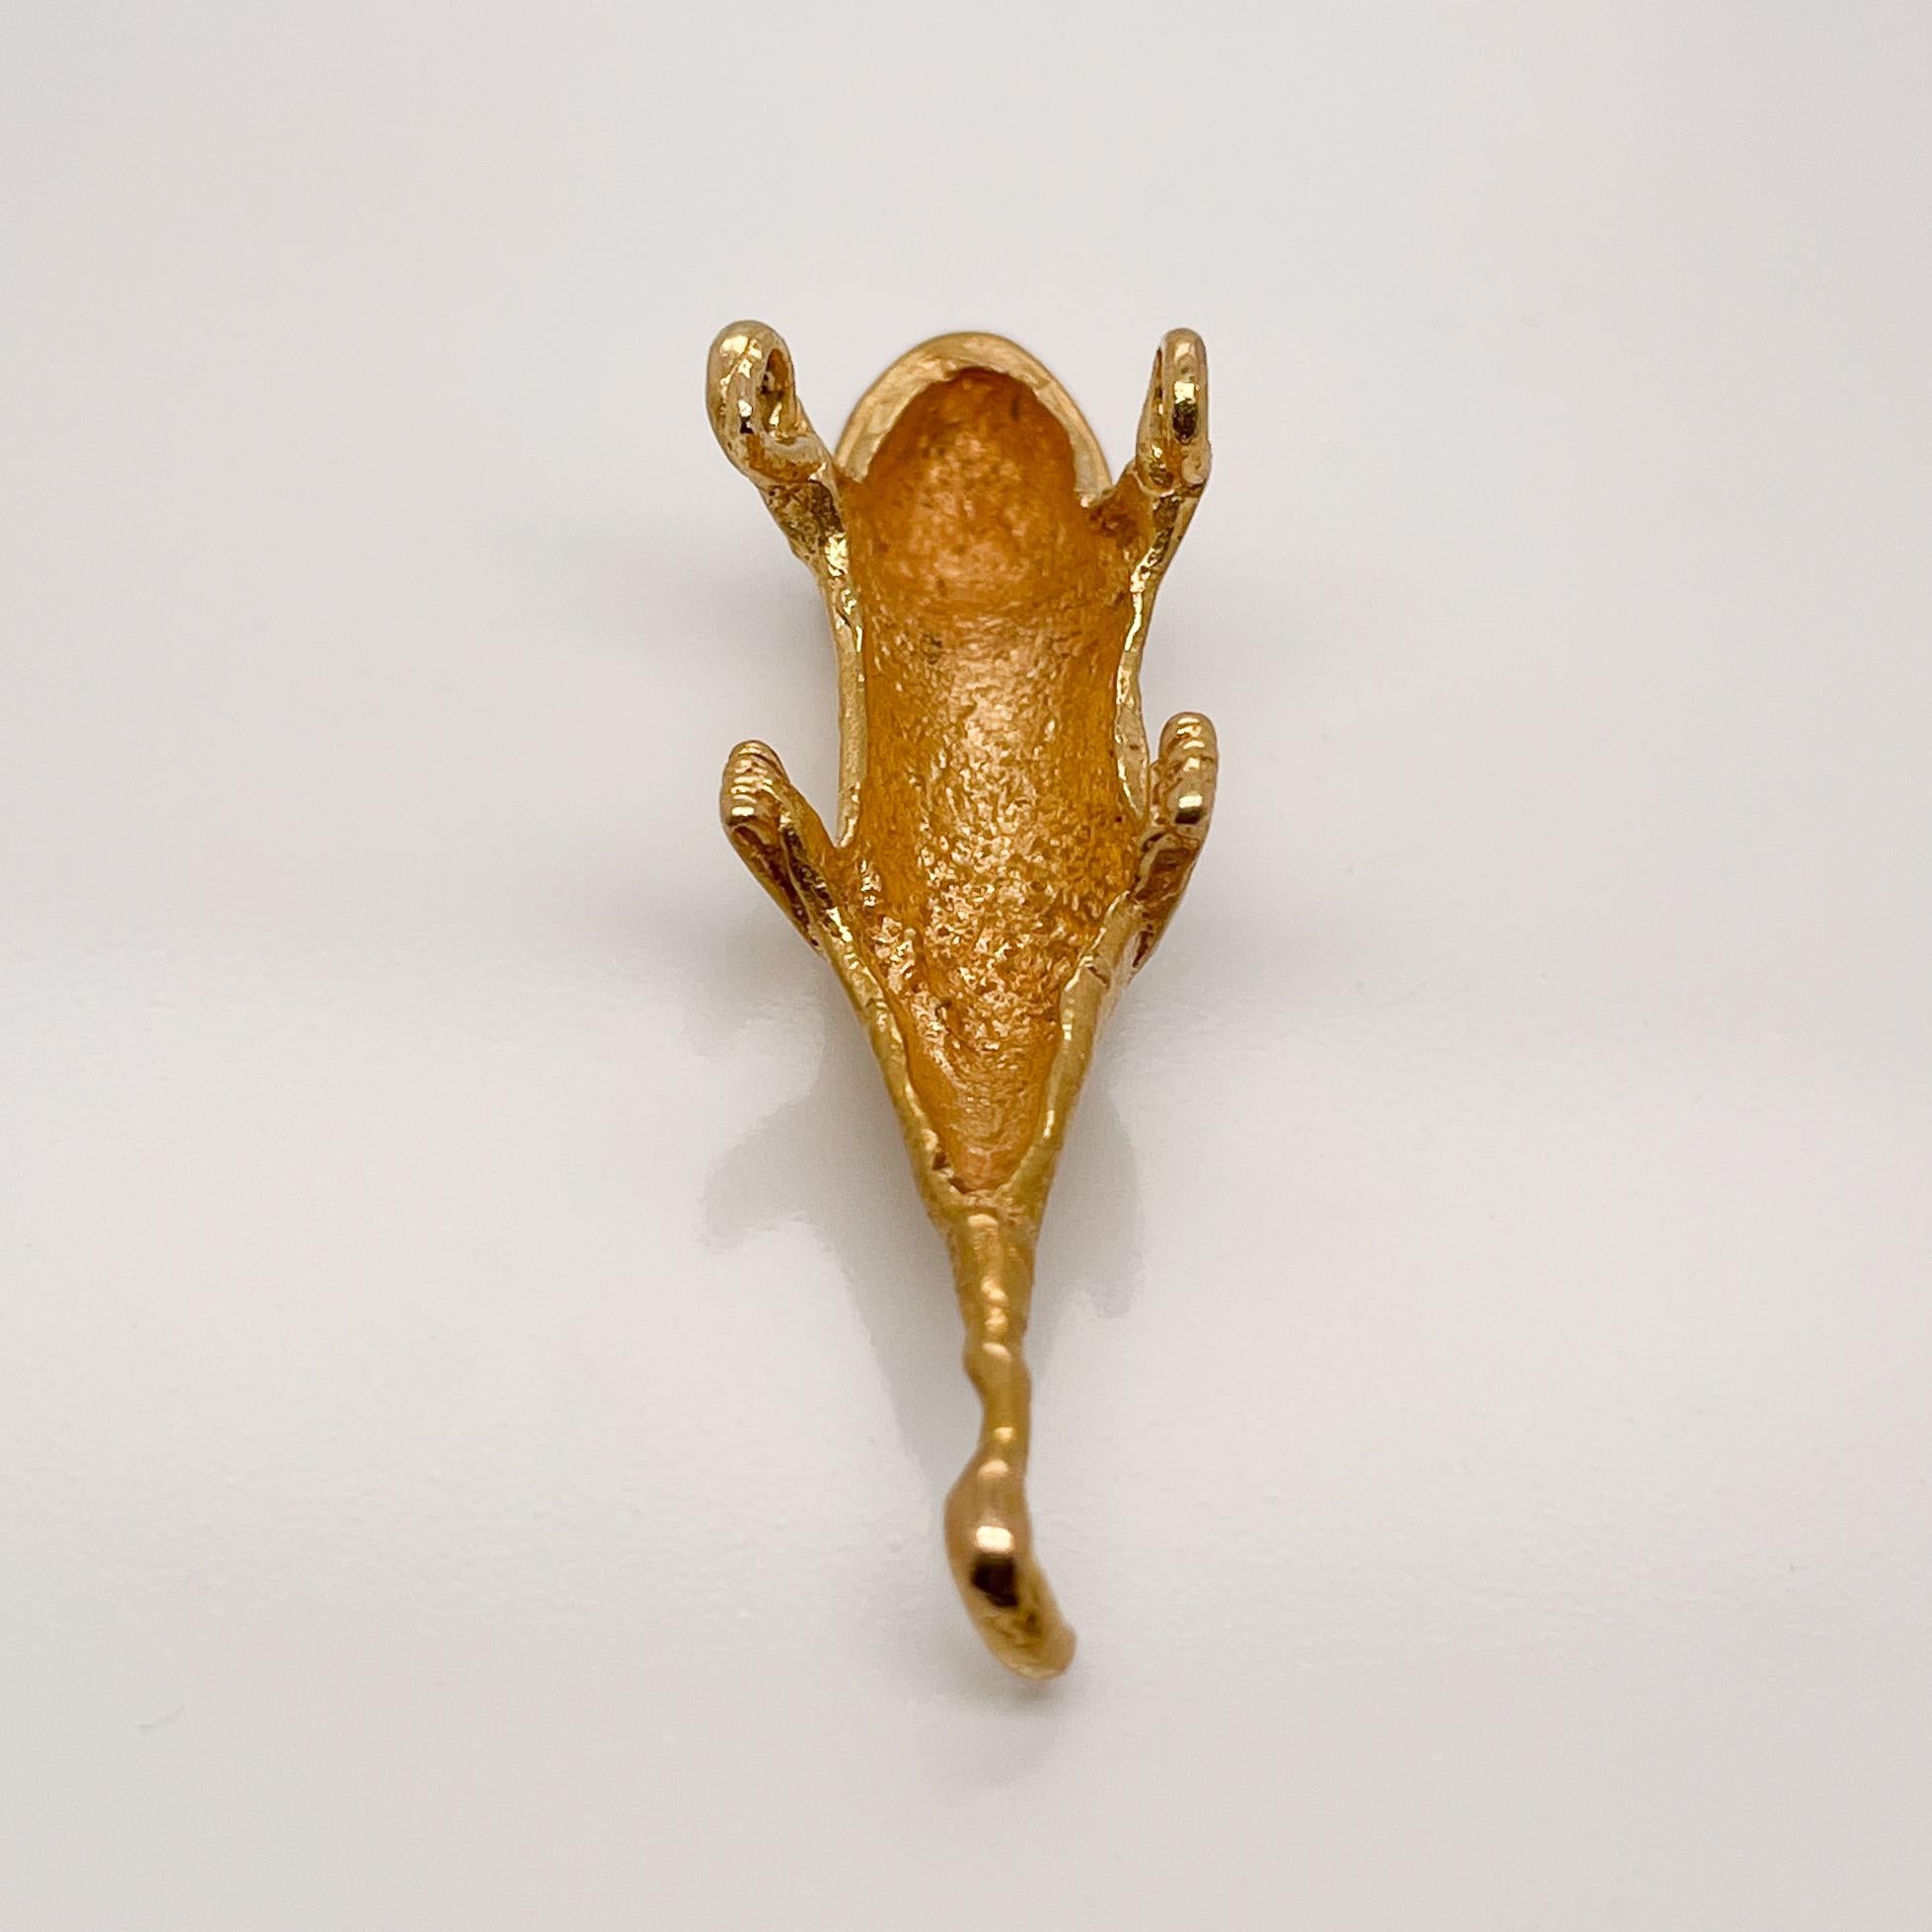 Antique Pre-Columbian Gecko or Lizard High Karat Gold Pendant 1